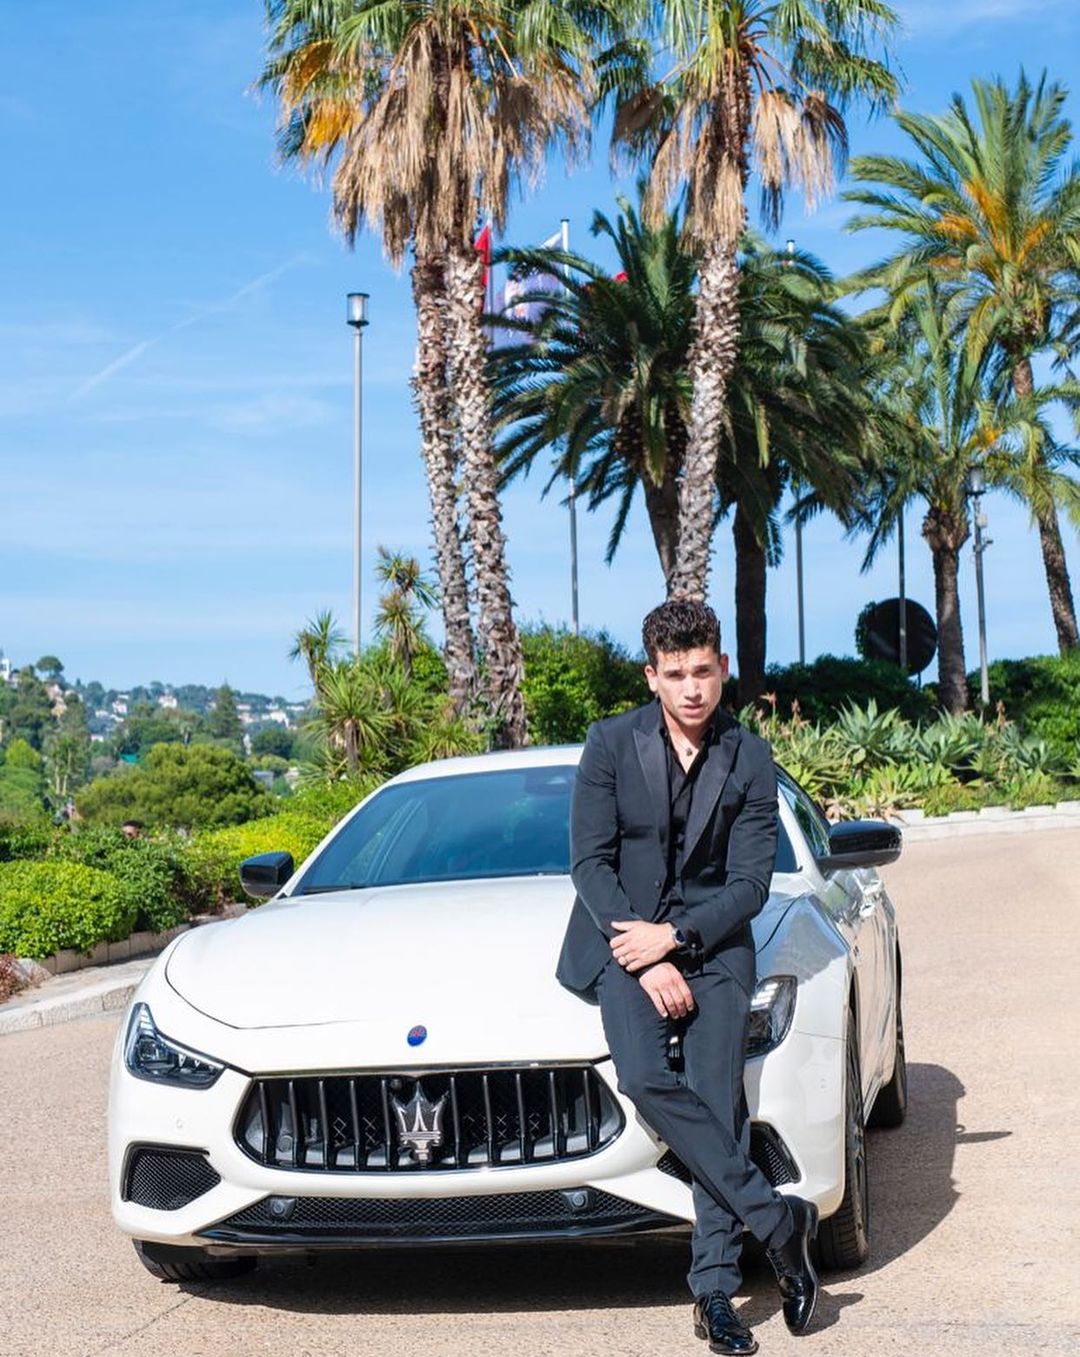 Jaime Lorente posing in front of his car.